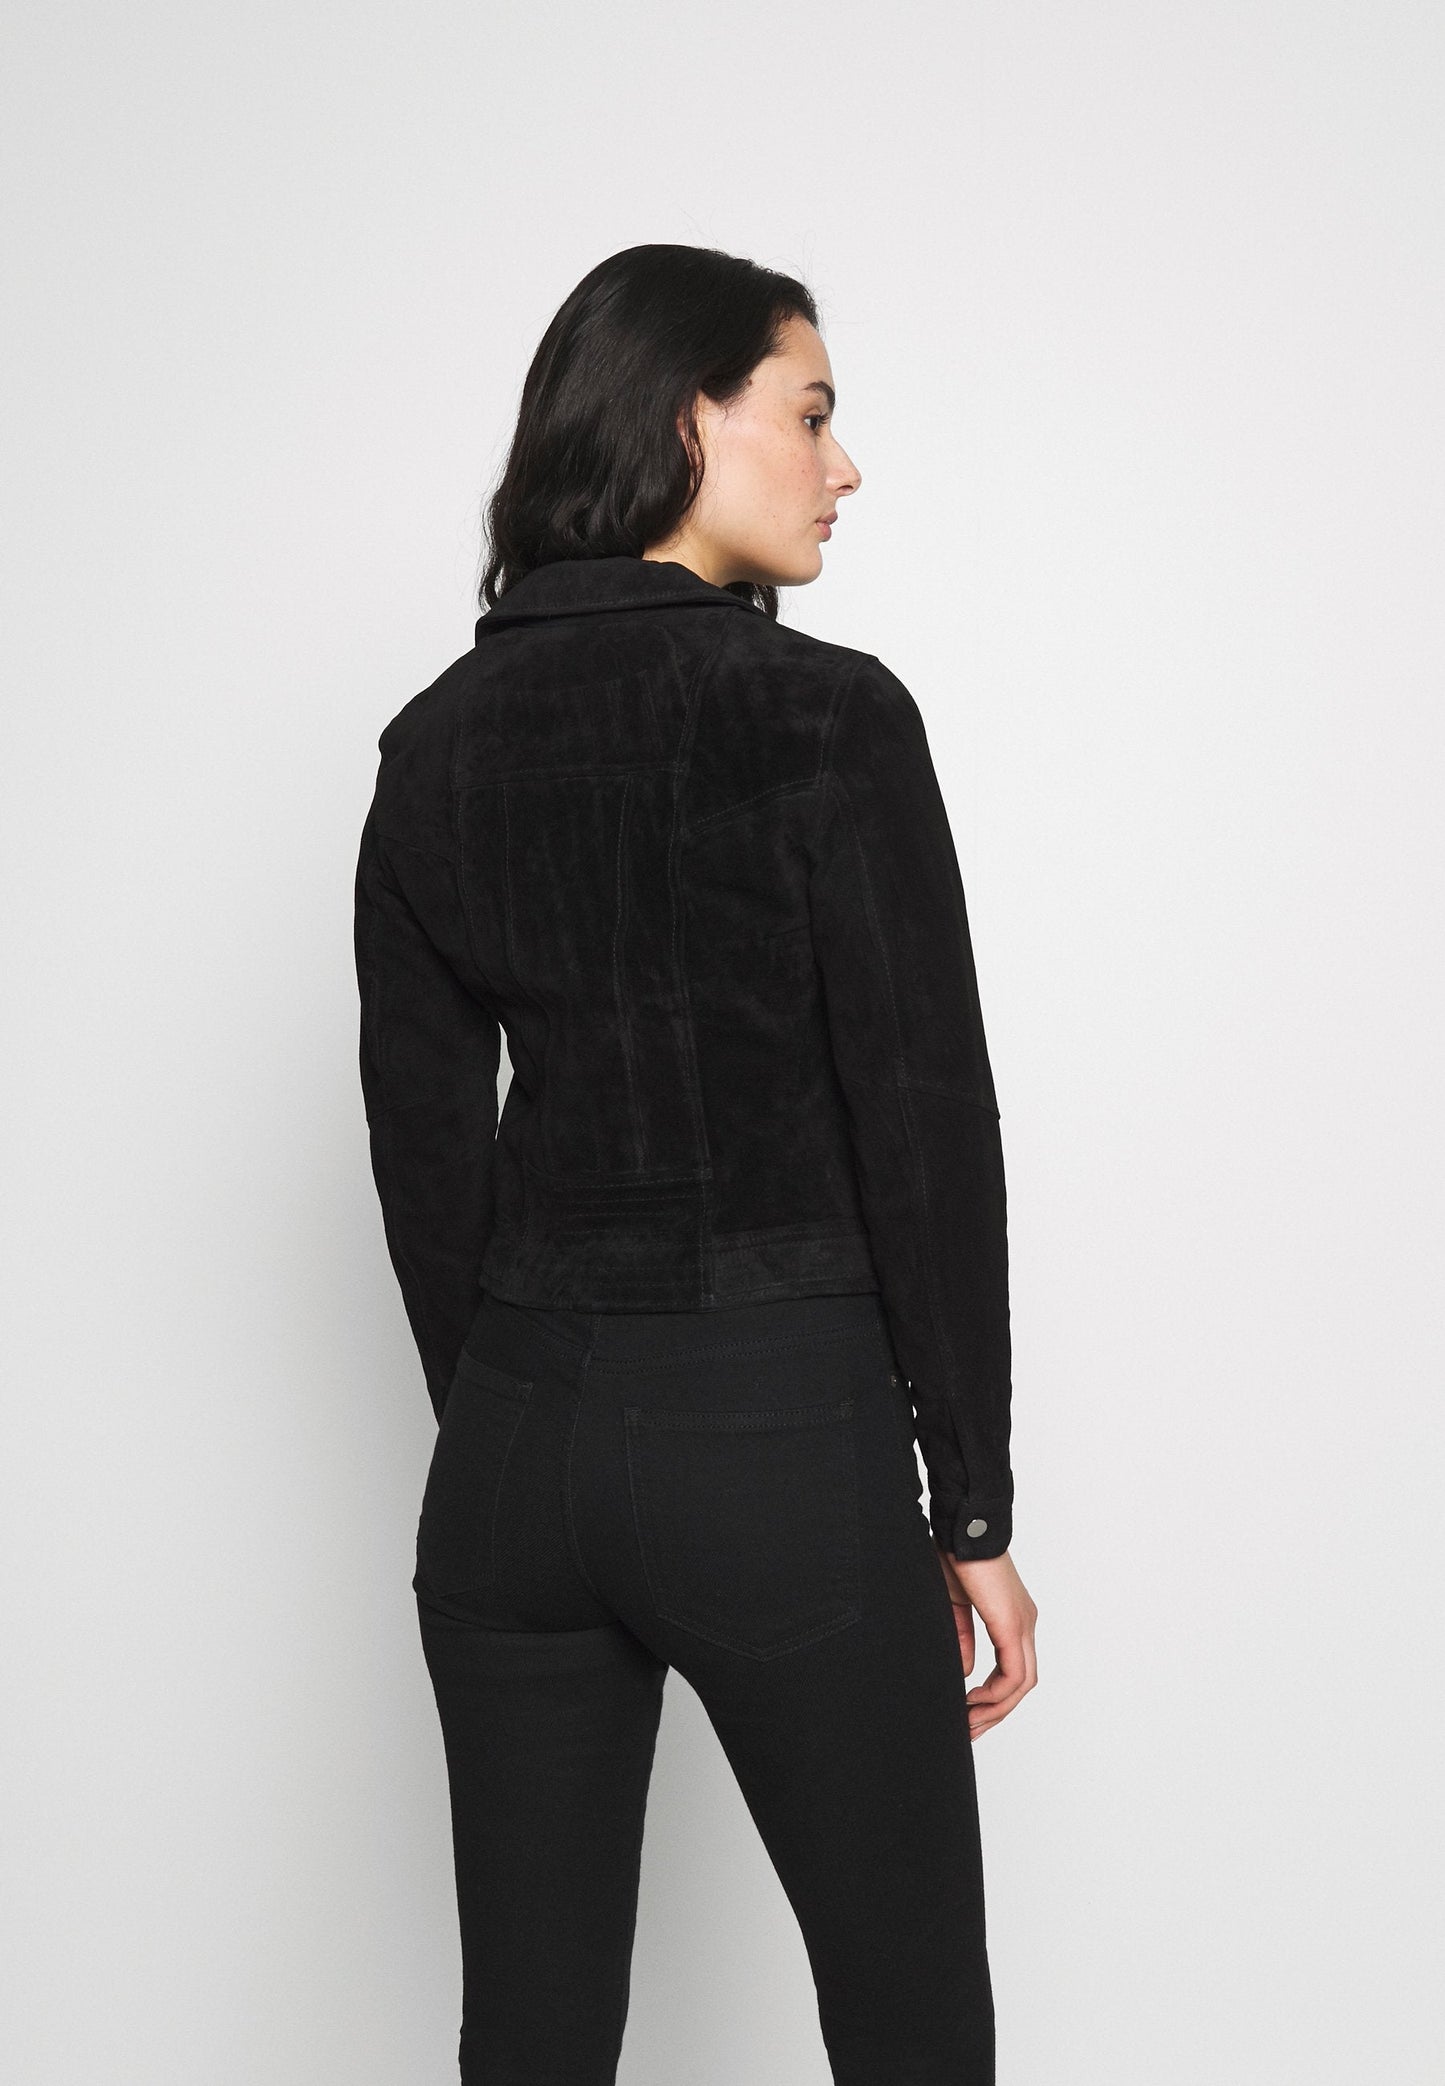 Women's Black Suede Leather Biker Jacket